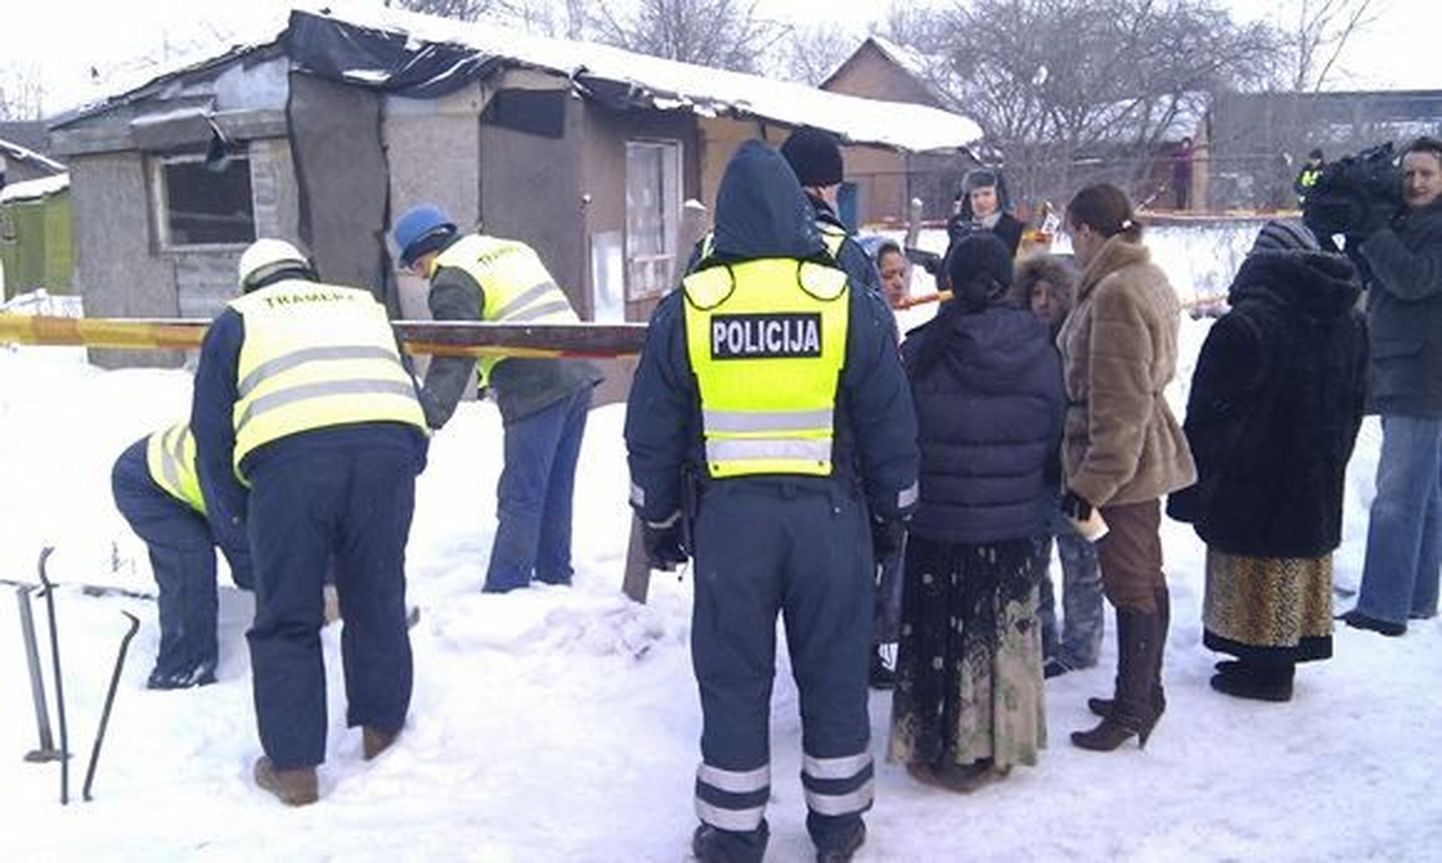 Leedu politseinikud Kirtimai mustlaste taboris.